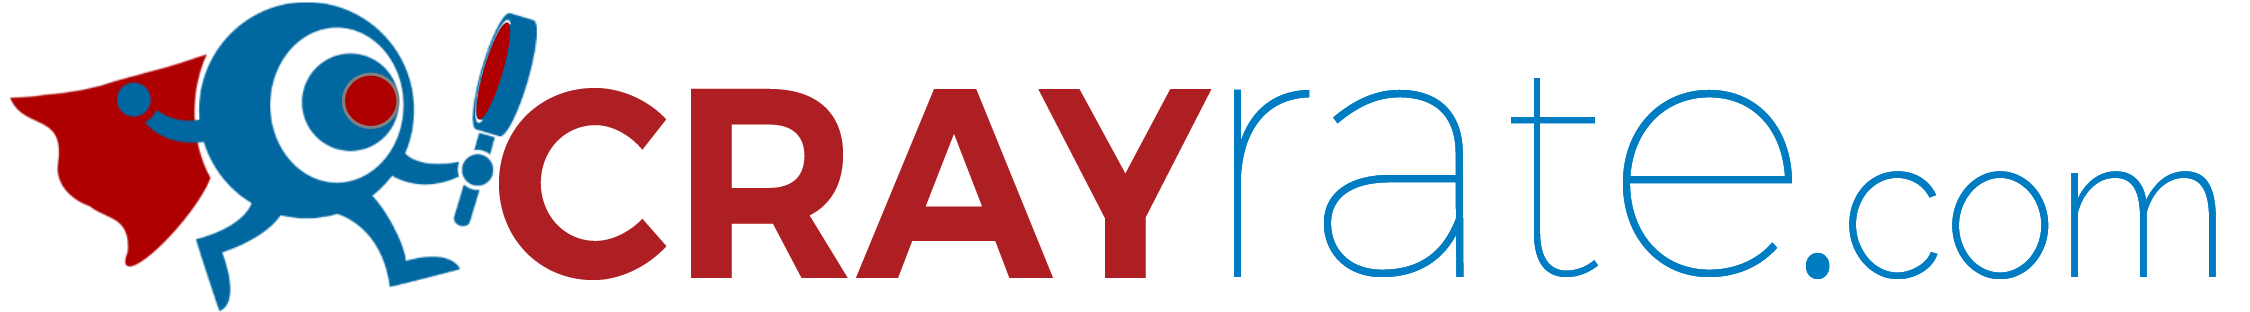 CrayRate.com Logo